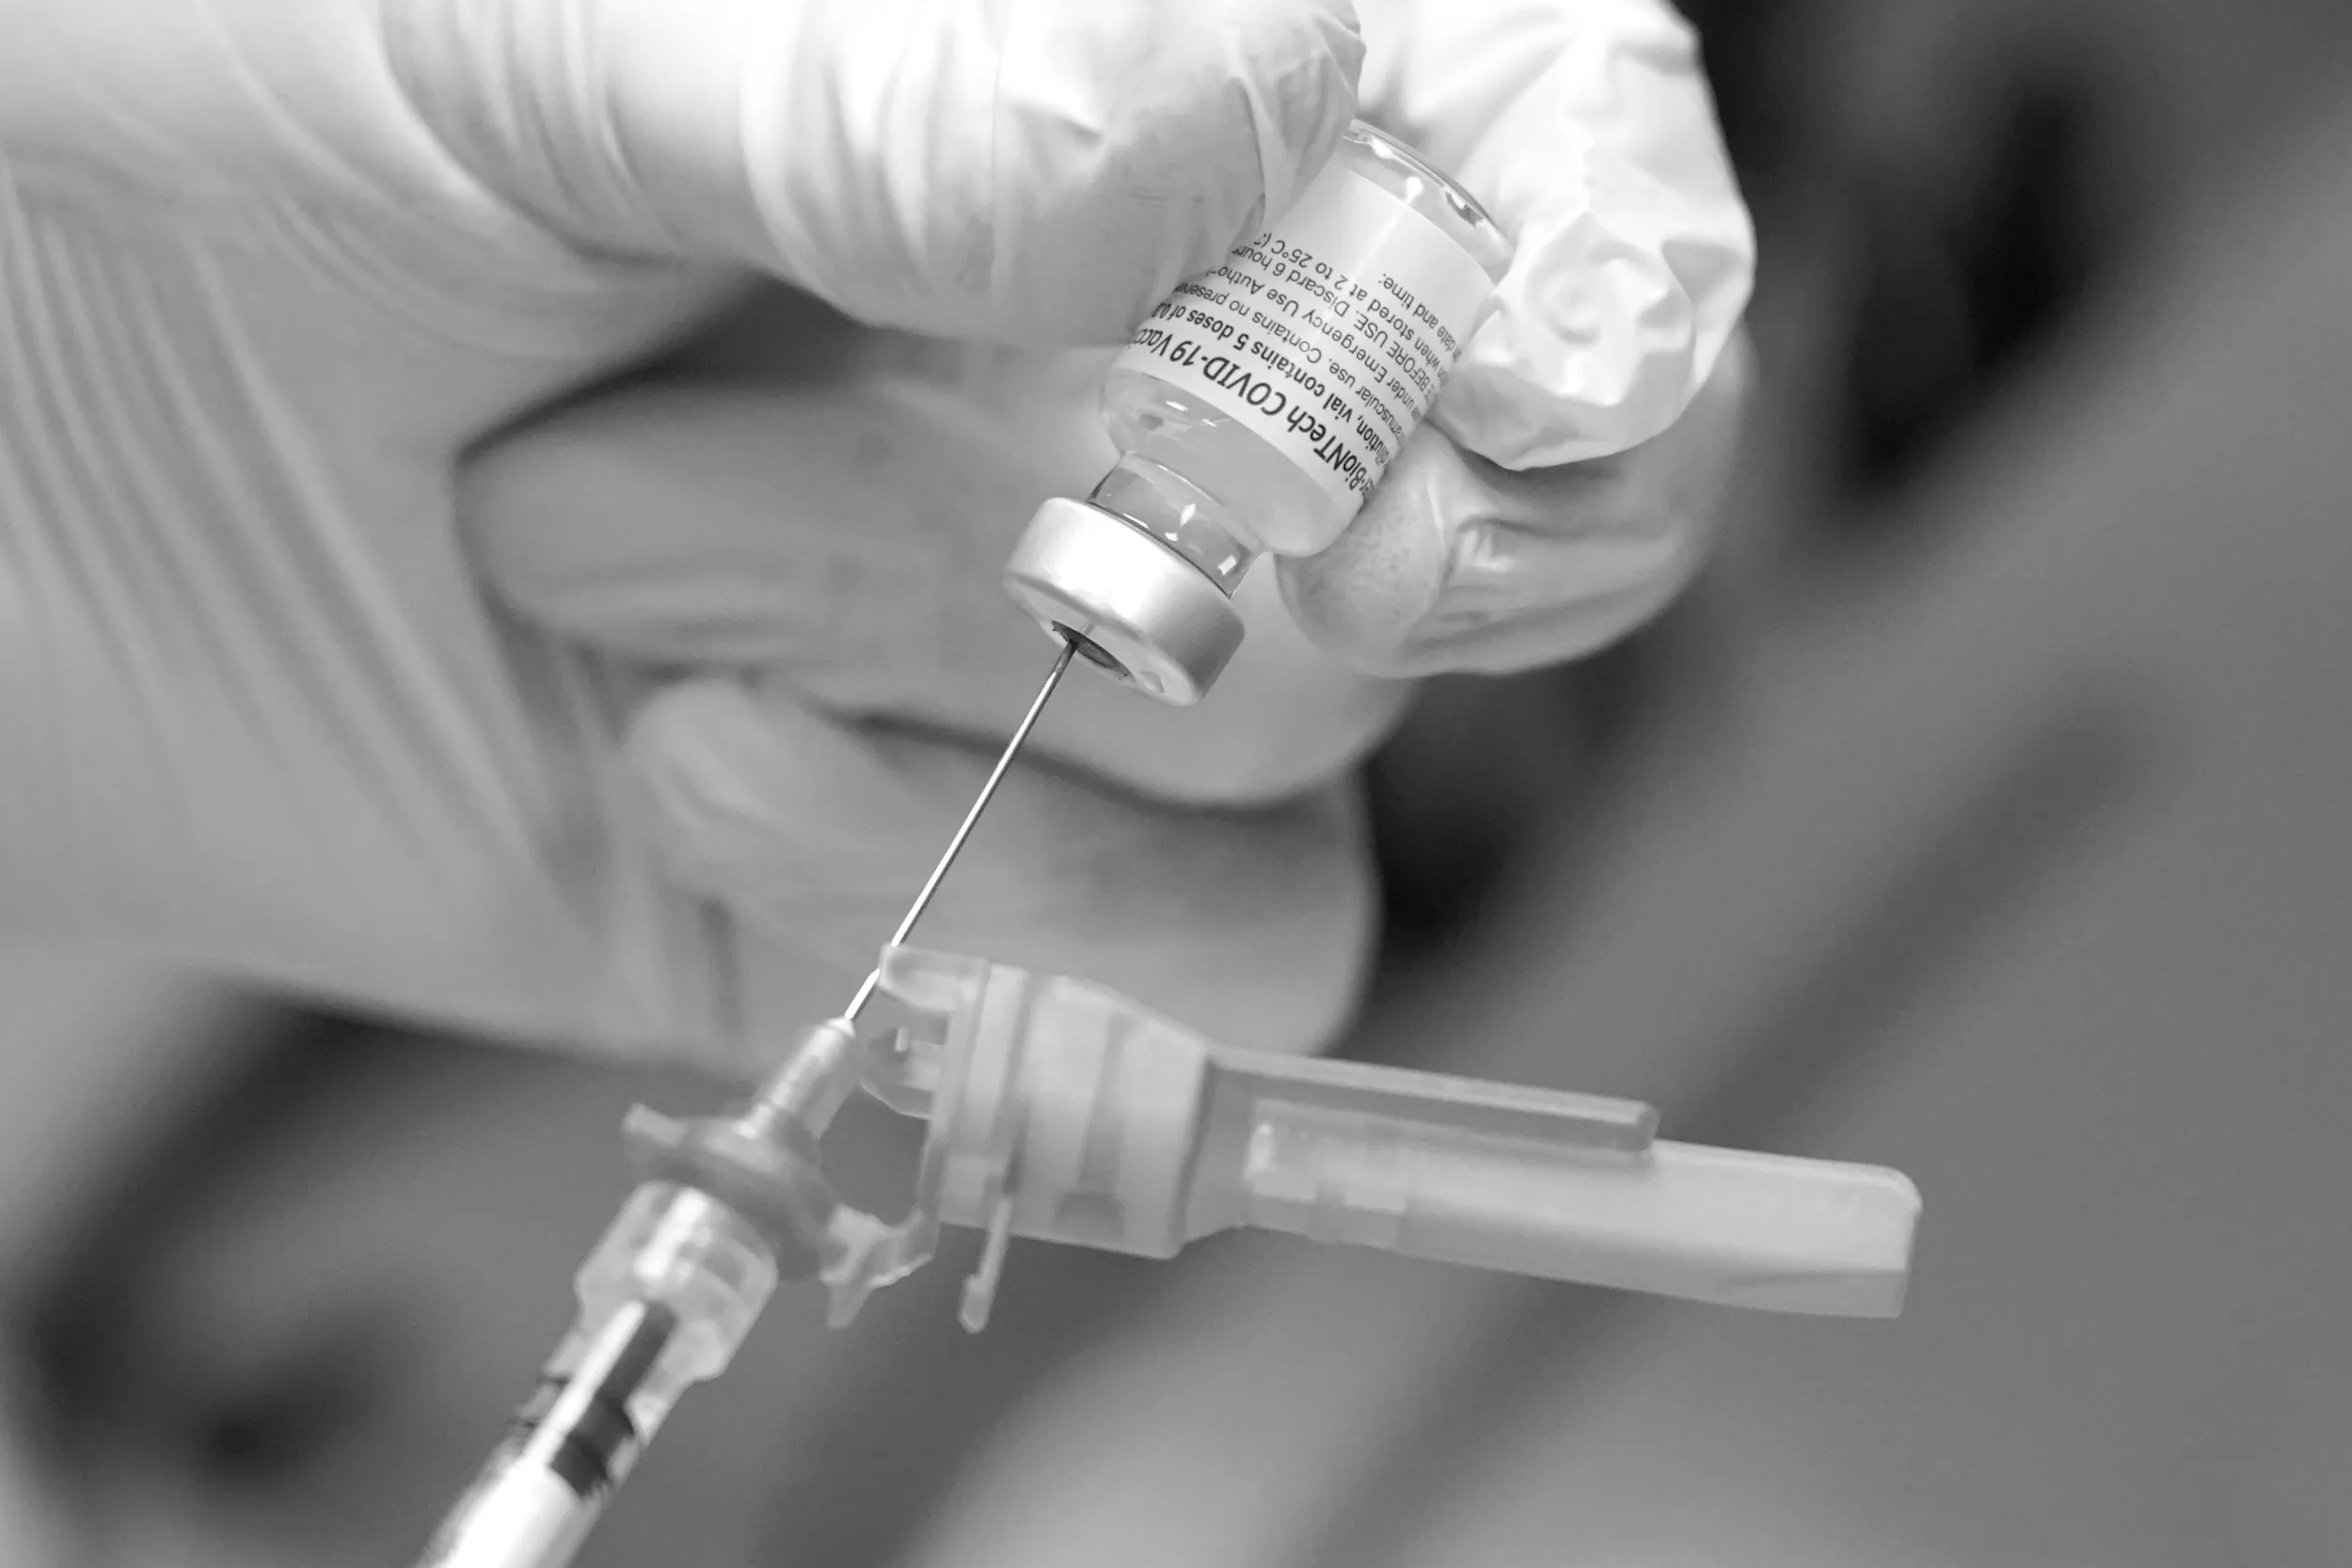 Již brzy: očkování proti covidu u věkové kategorie 12+, které ministerští úředníci nechtěli povolit